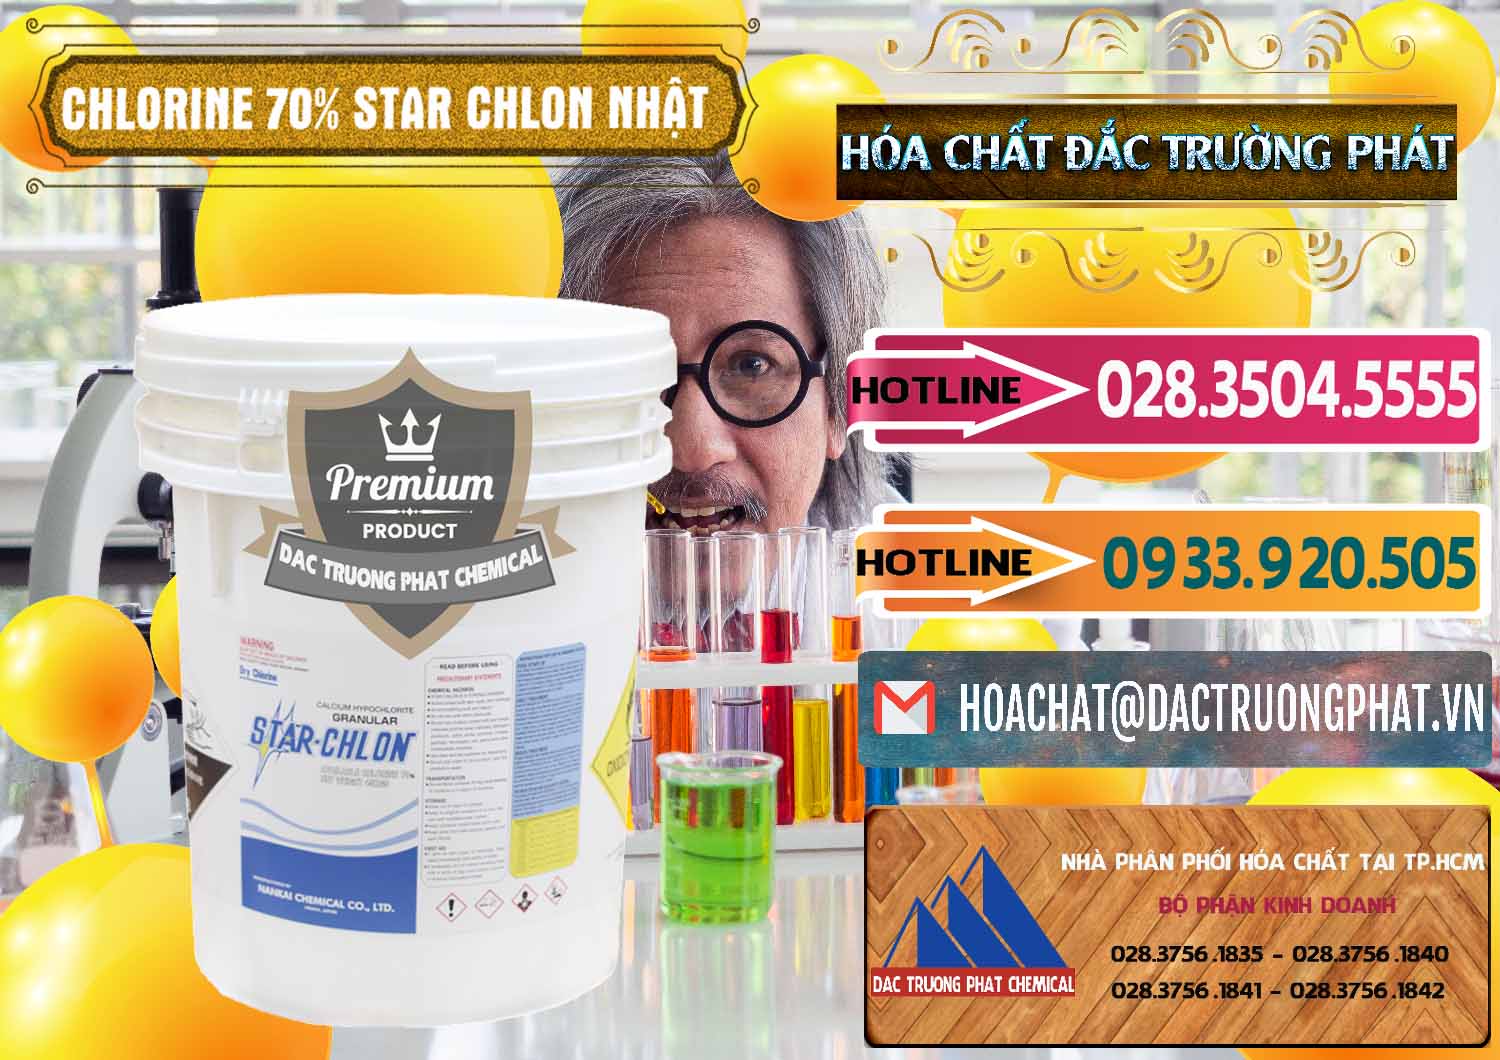 Cty chuyên bán ( cung ứng ) Clorin – Chlorine 70% Star Chlon Nhật Bản Japan - 0243 - Cty cung cấp _ kinh doanh hóa chất tại TP.HCM - dactruongphat.vn